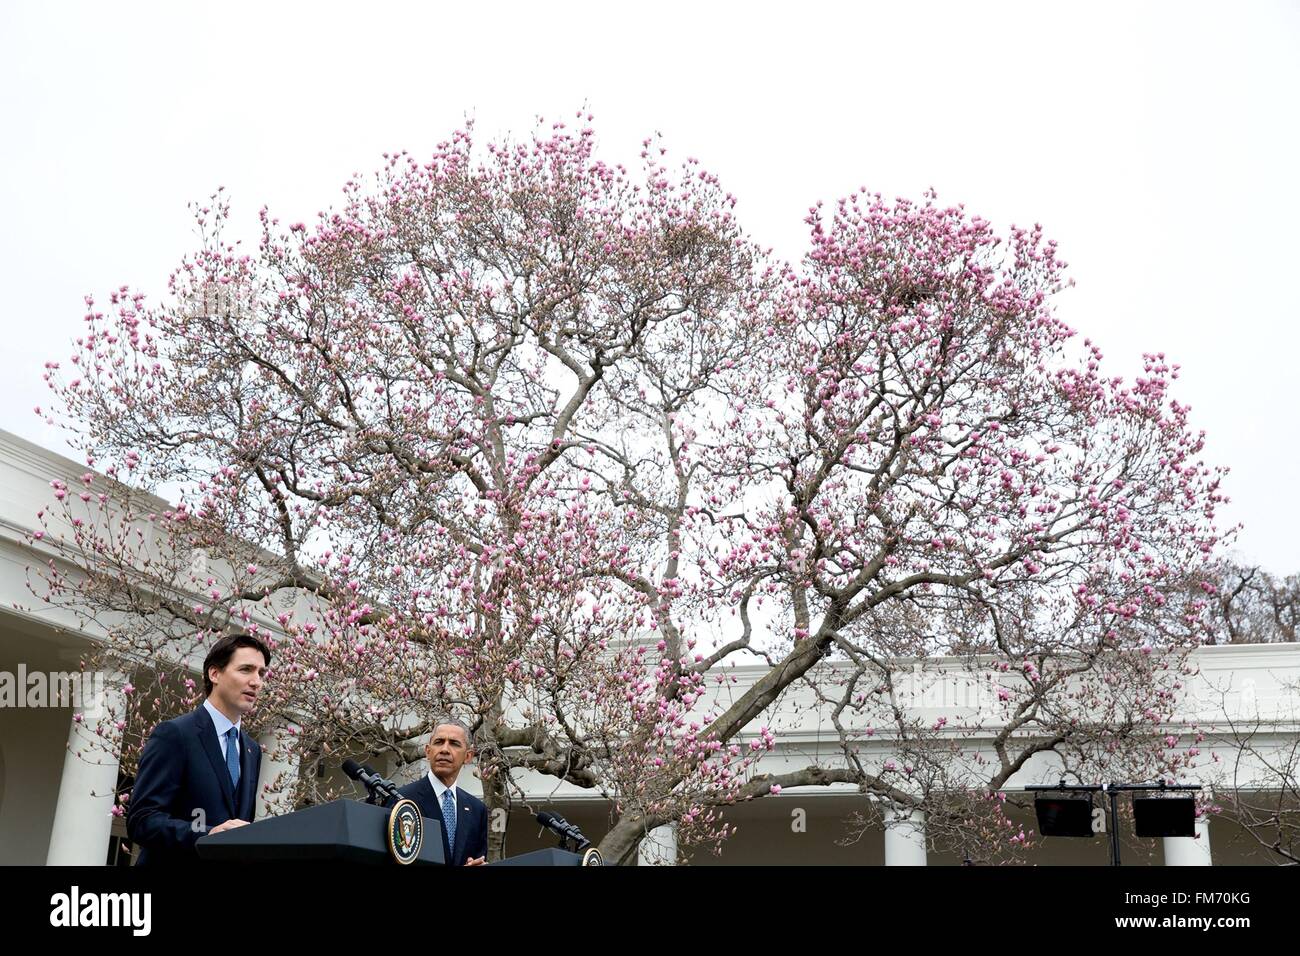 US-Präsident Barack Obama hört der kanadische Premierminister Justin Trudeau Antwort eine Frage während einer gemeinsamen Pressekonferenz im Weißen Haus 10. März 2016 in Washington, DC. Dies ist der erste Staatsbesuch eines kanadischen Premierministers in 20 Jahren. Stockfoto